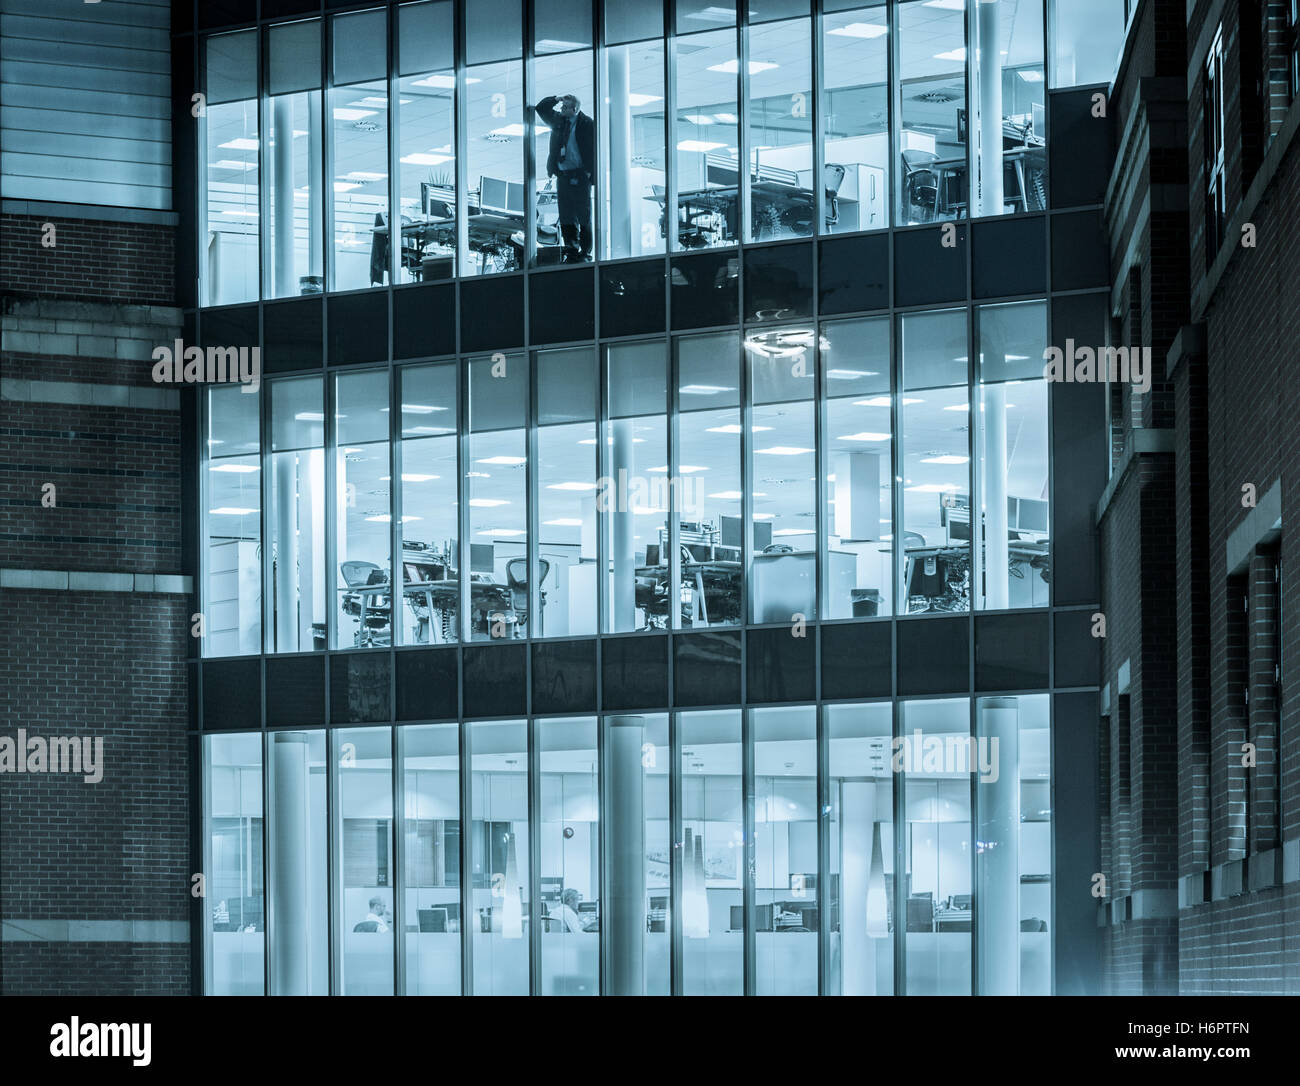 Mann allein im Büro, der nachts aus dem Fenster schaut: Energieeinsparung, Arbeit von zu Hause aus Stress, psychische Gesundheit, Einsamkeit ... Konzept. Stockfoto